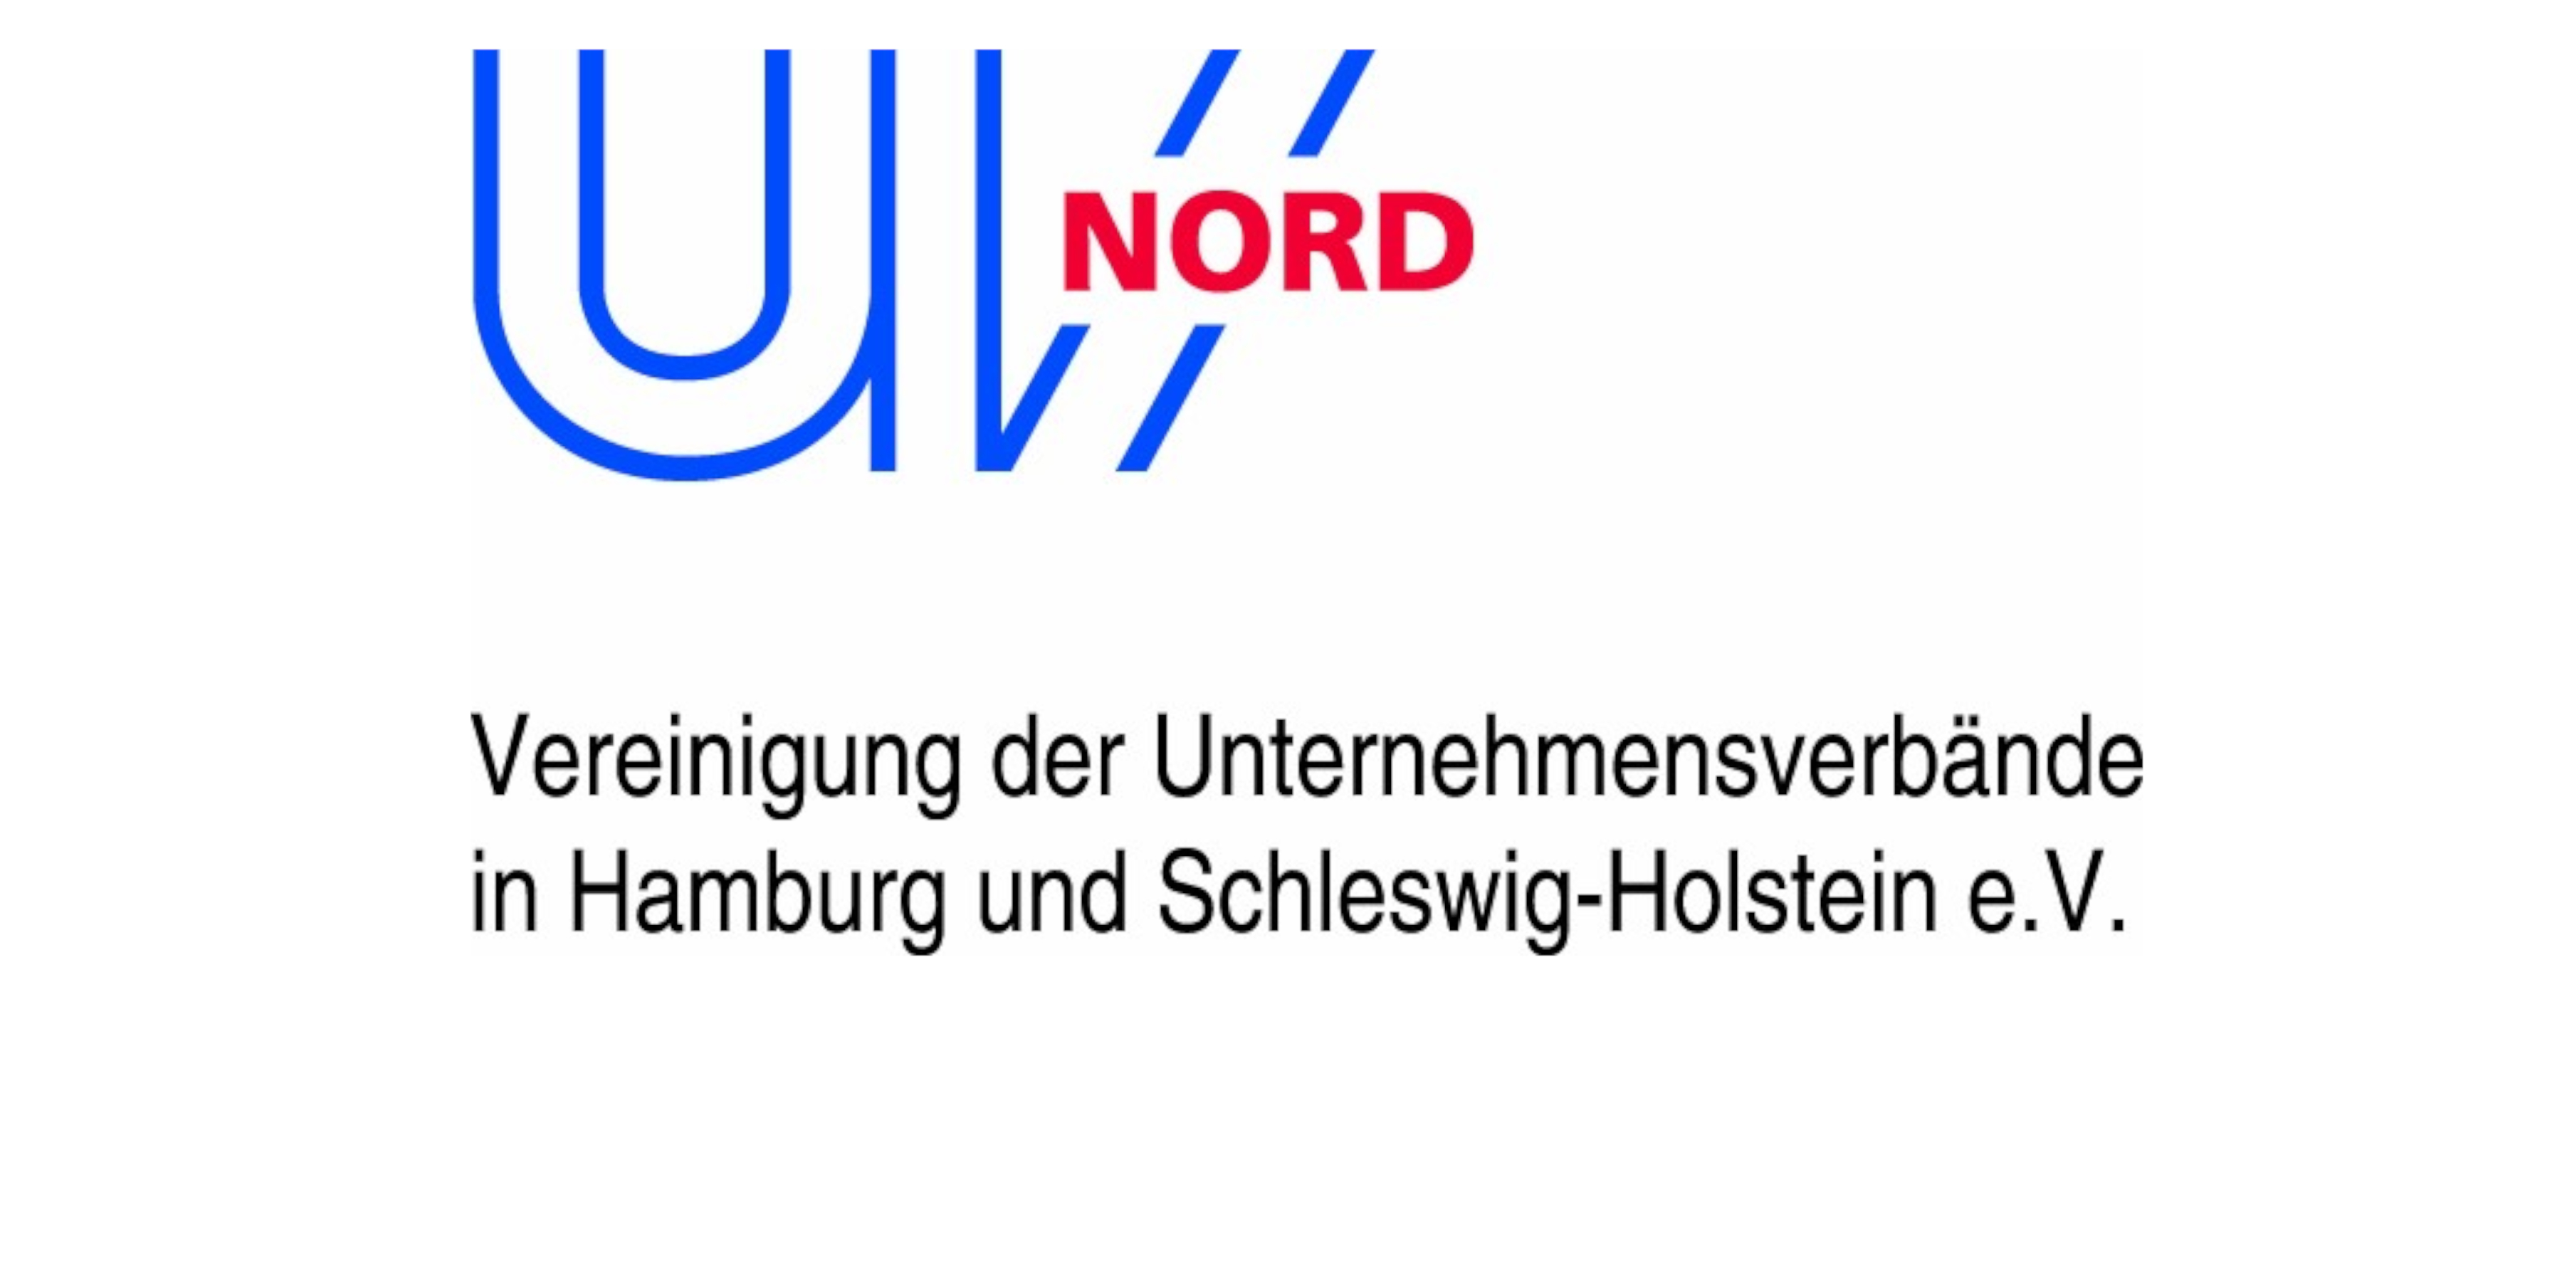 Vereinigung der Unternehmensverbände in Hamburg und Schleswig-Holstein